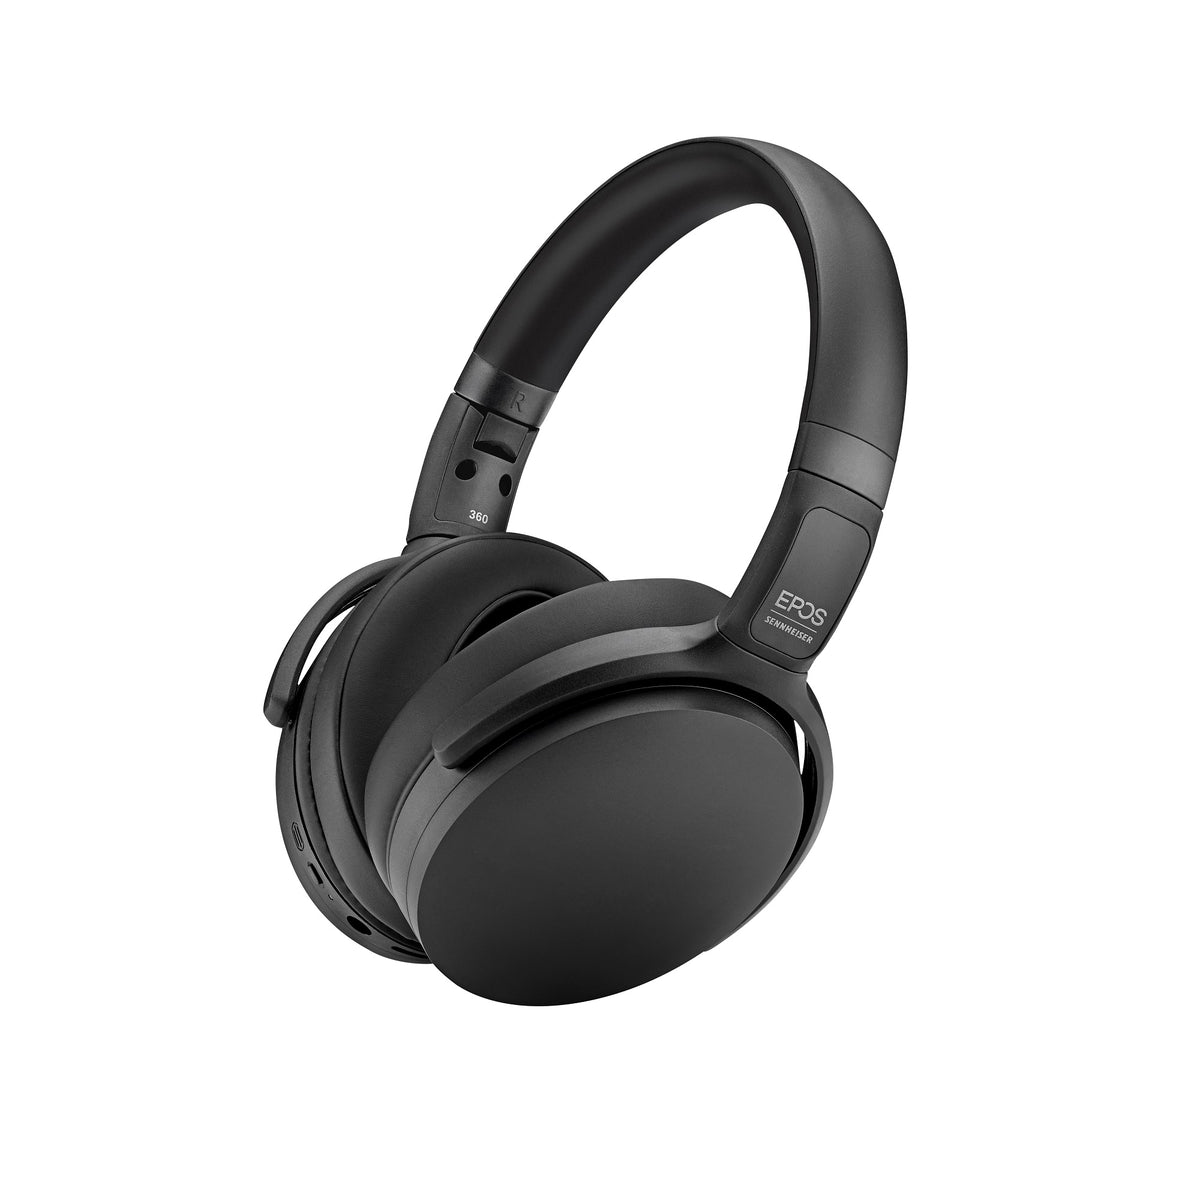 EPOS headphones SENNHEISER ADAPT 361 Bluetooth Black